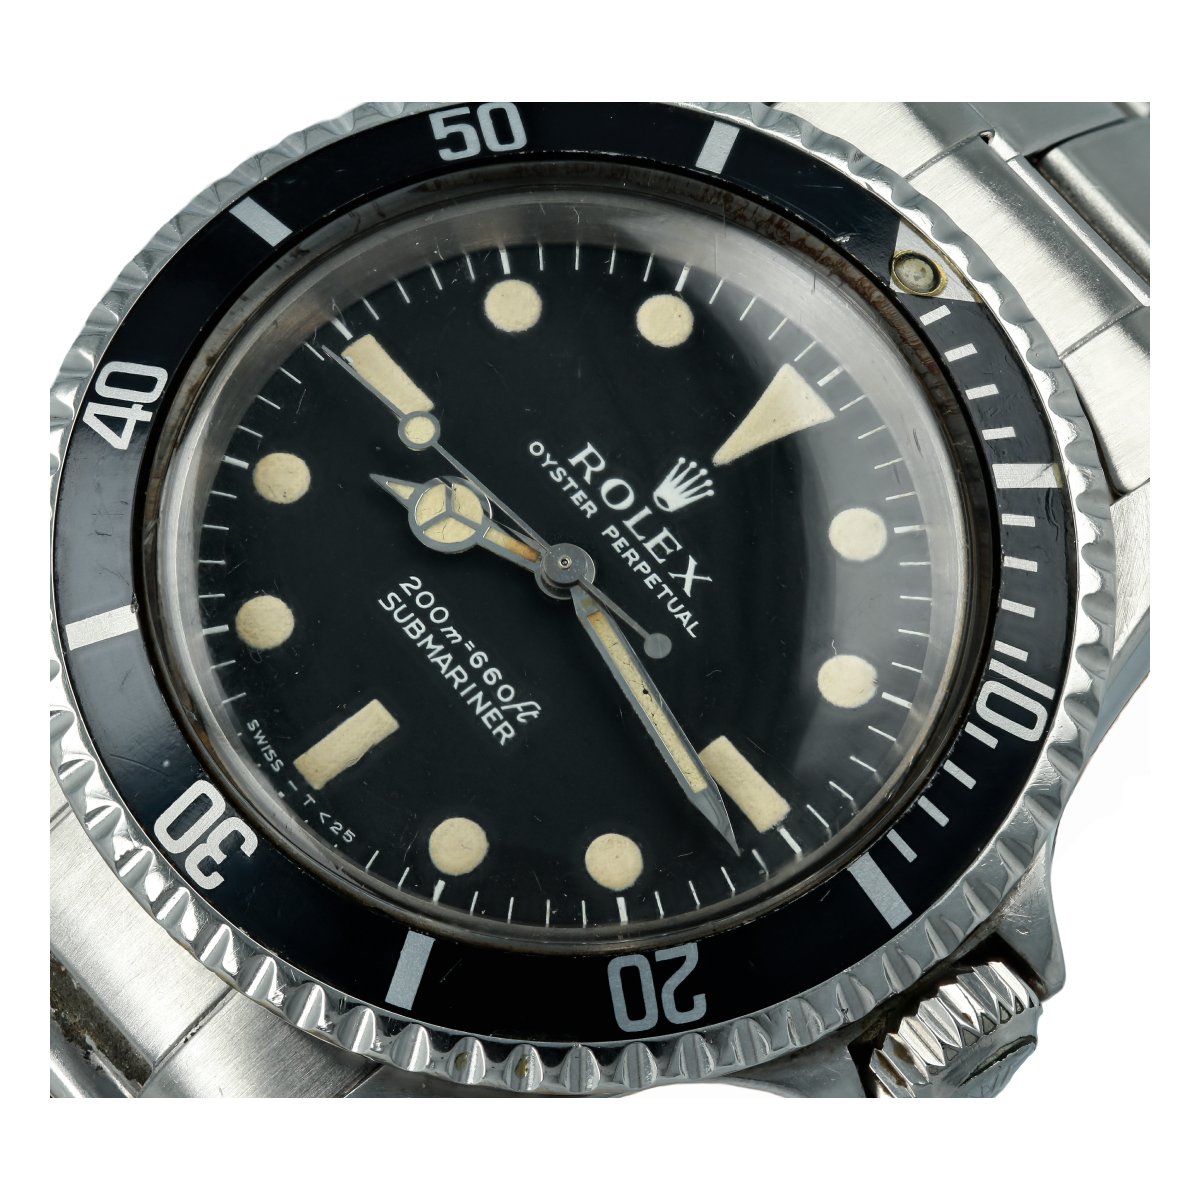 5513 rolex submariner